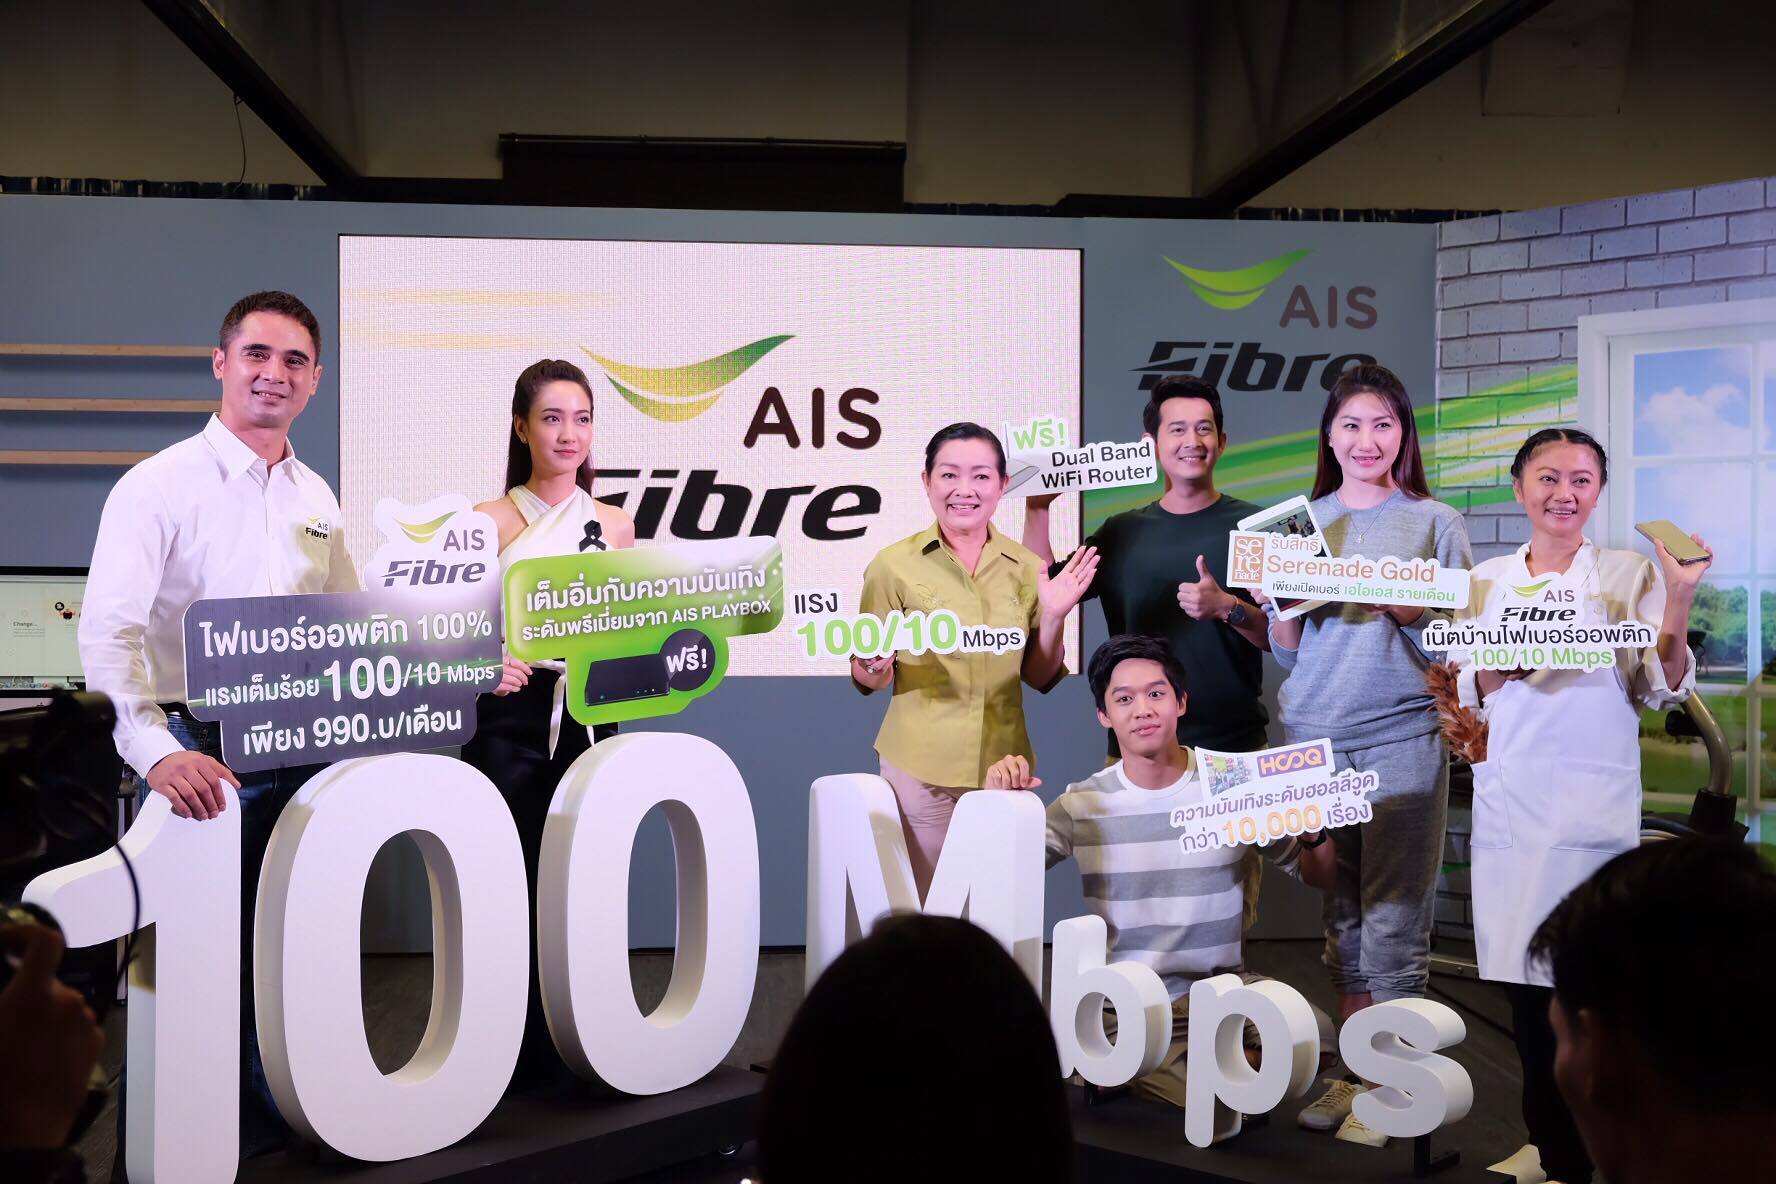 AIS เผยโปรแรงส่งท้ายปีกับเน็ตบ้านความเร็ว 100/10 Mbps เพียง 990 บาทพร้อมของแถมเพียบ !!